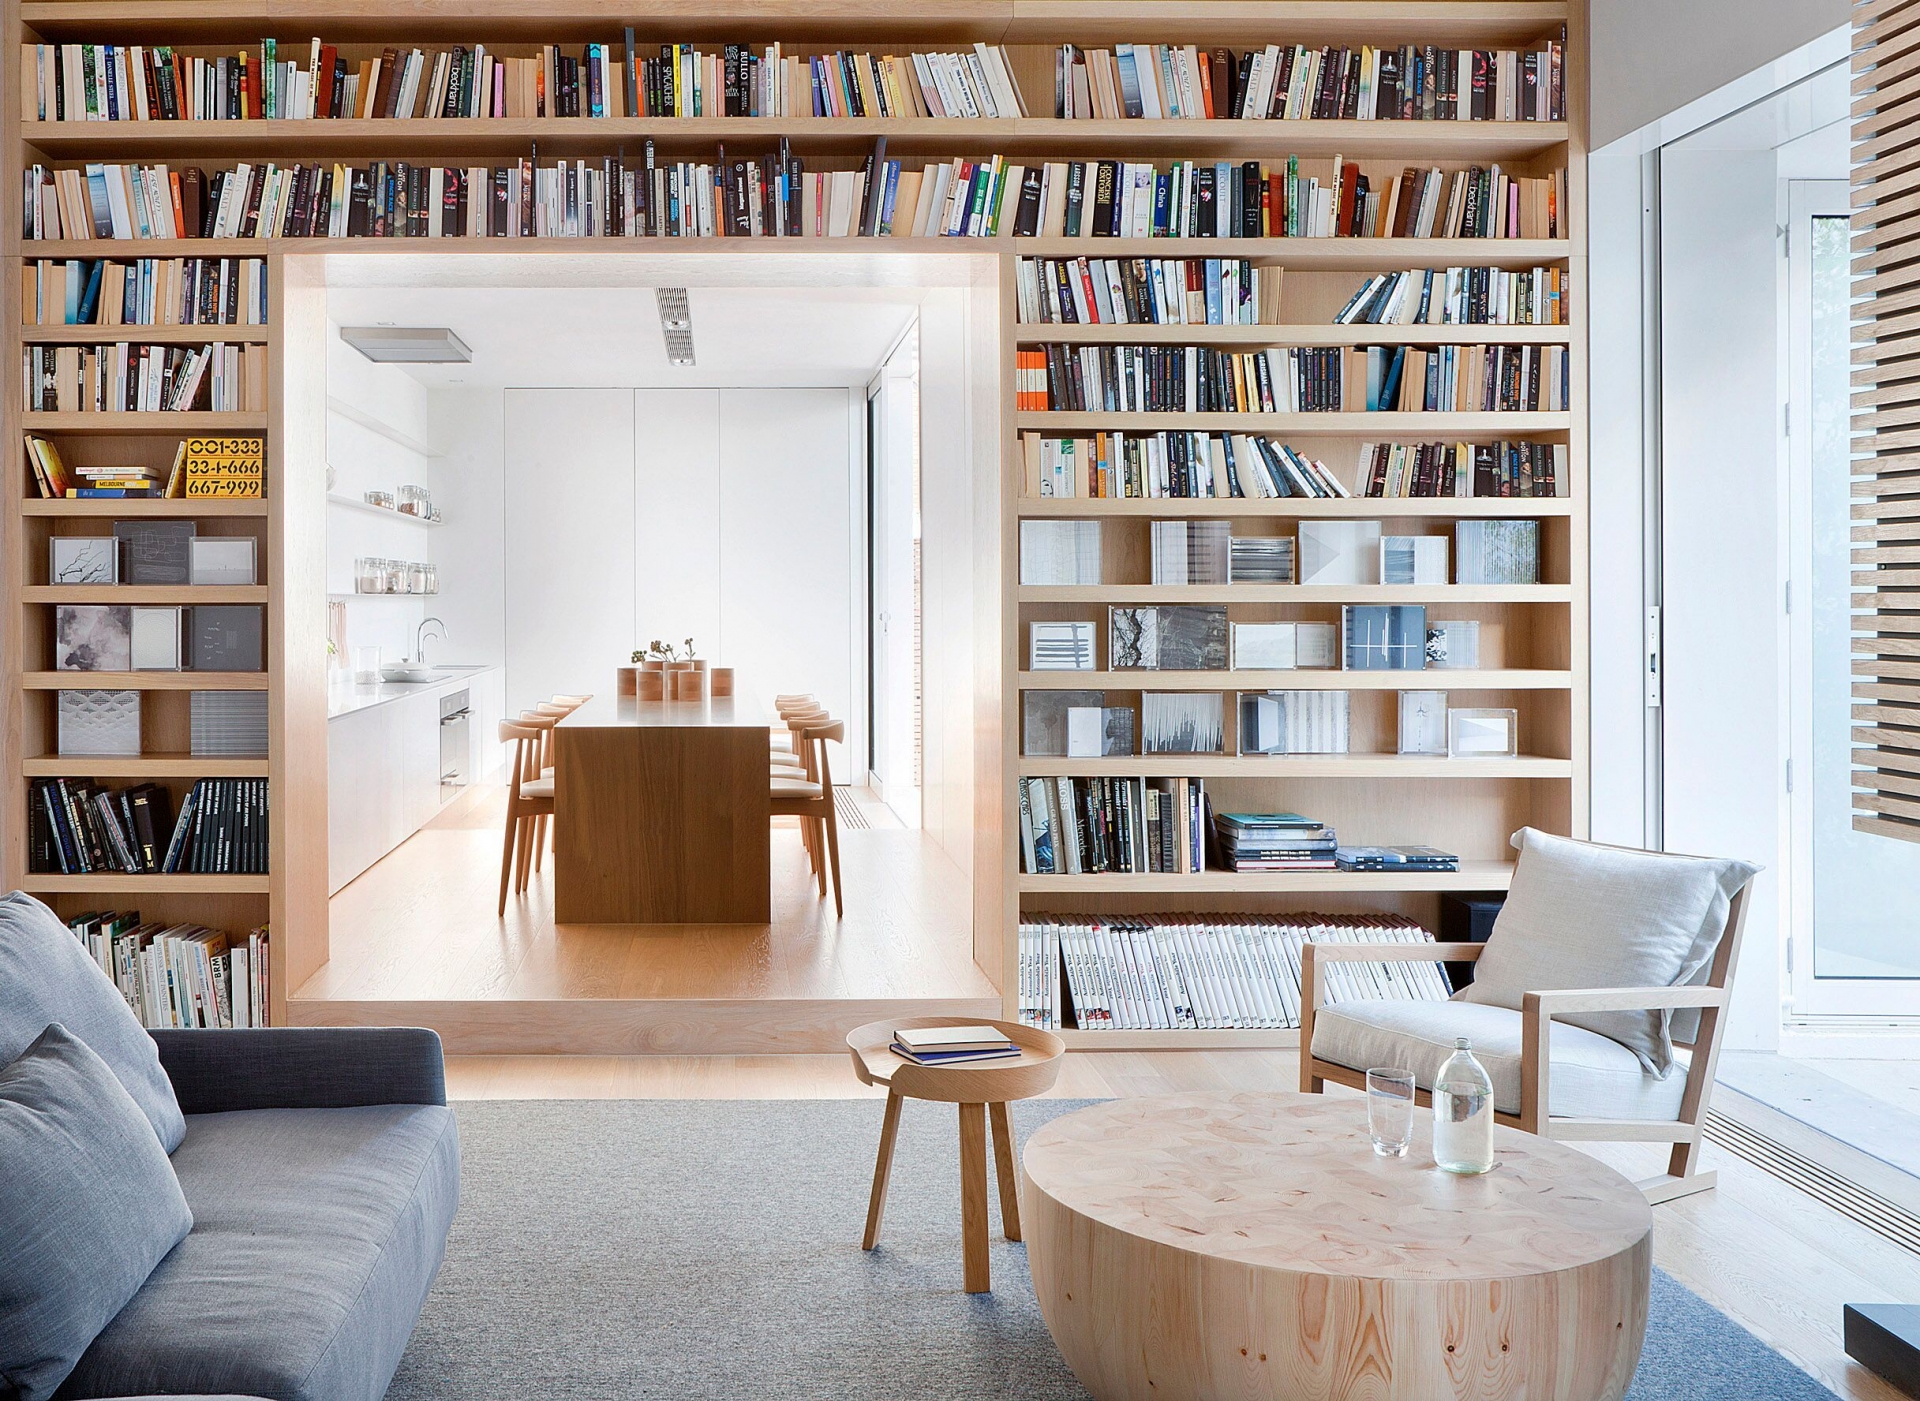 Ngôi nhà tại Melbourne (Úc) do Four Studio thiết kế sử dụng vô số đồ nội thất làm từ gỗ sồi Mỹ sắc màu tươi sáng. Từ bàn nước, ghế bành, bàn ghế phòng ăn, đặc biệt là hệ thống kệ mở tạo nên một thư viện trên tường phân chia phòng khách - phòng bếp.